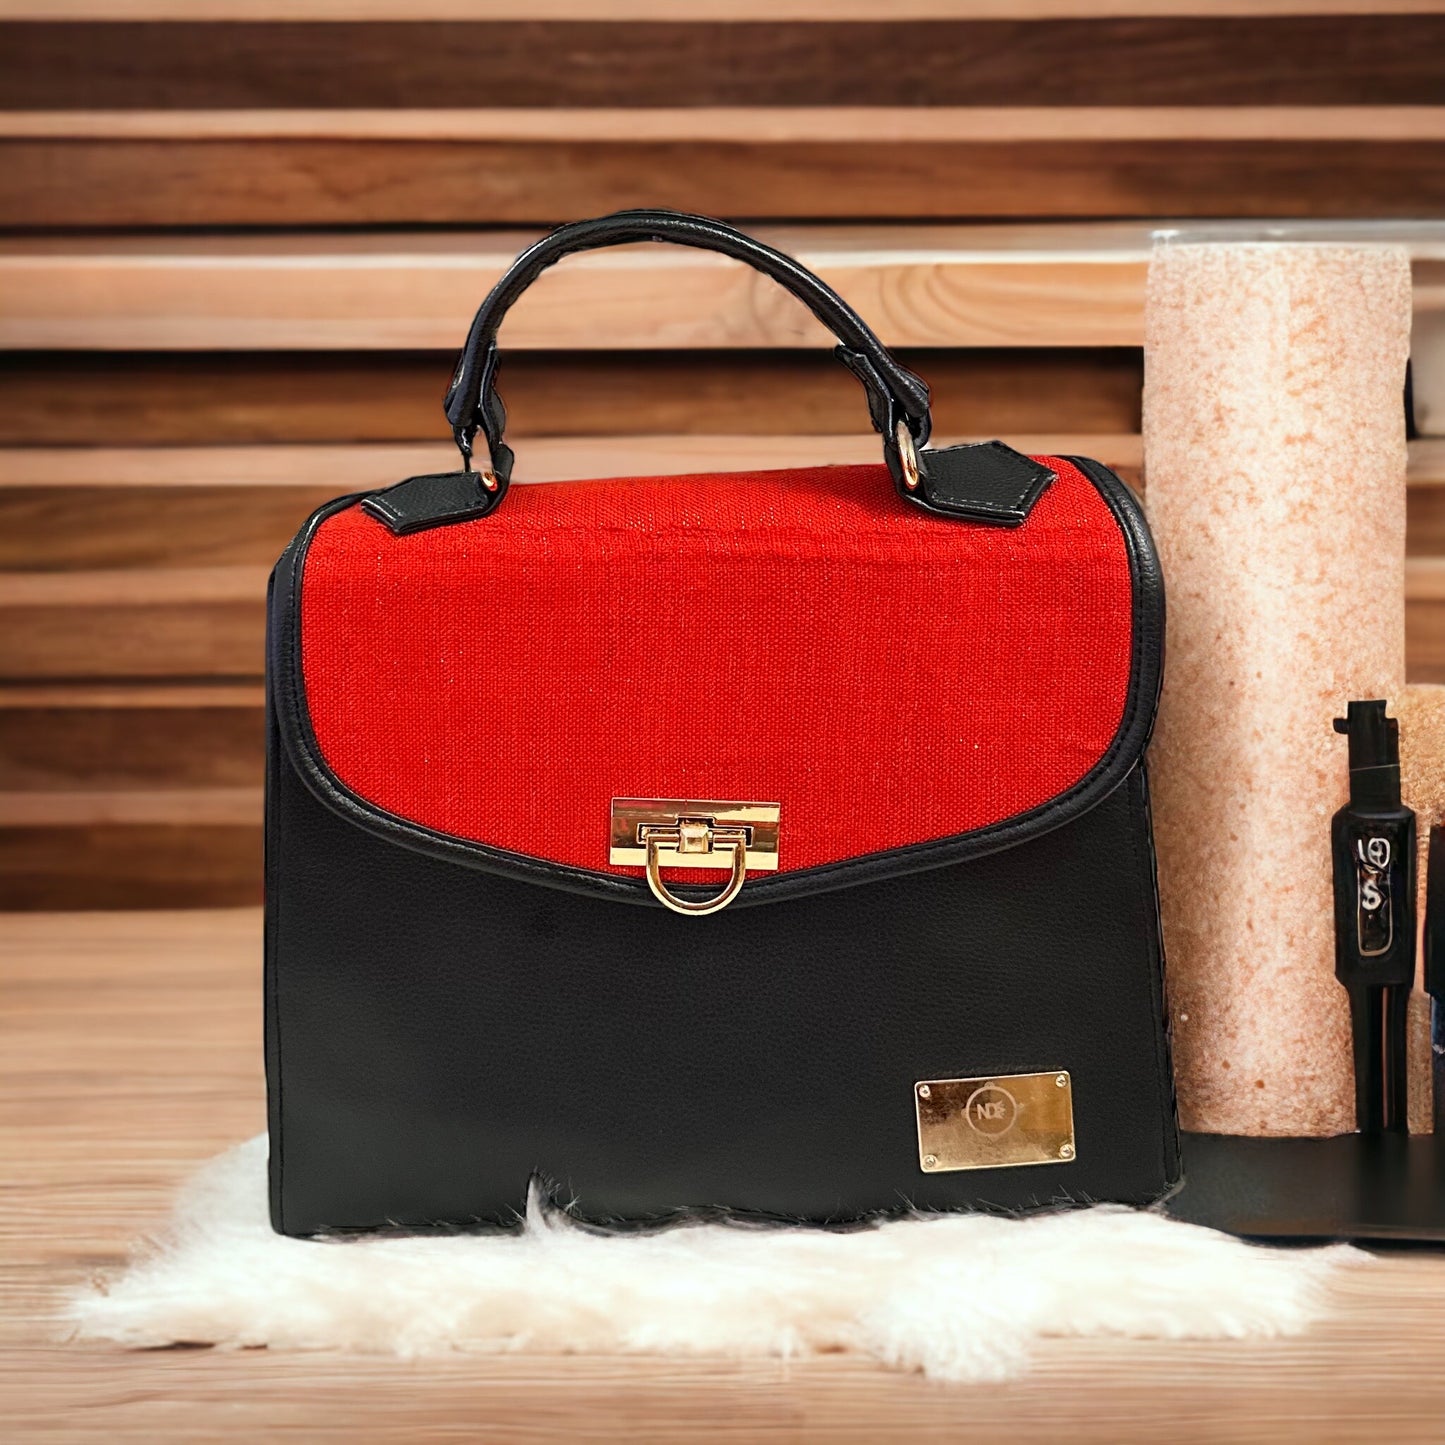 Alexia Ankara handbag/ luxury handbag/ sac à main Africain de luxe